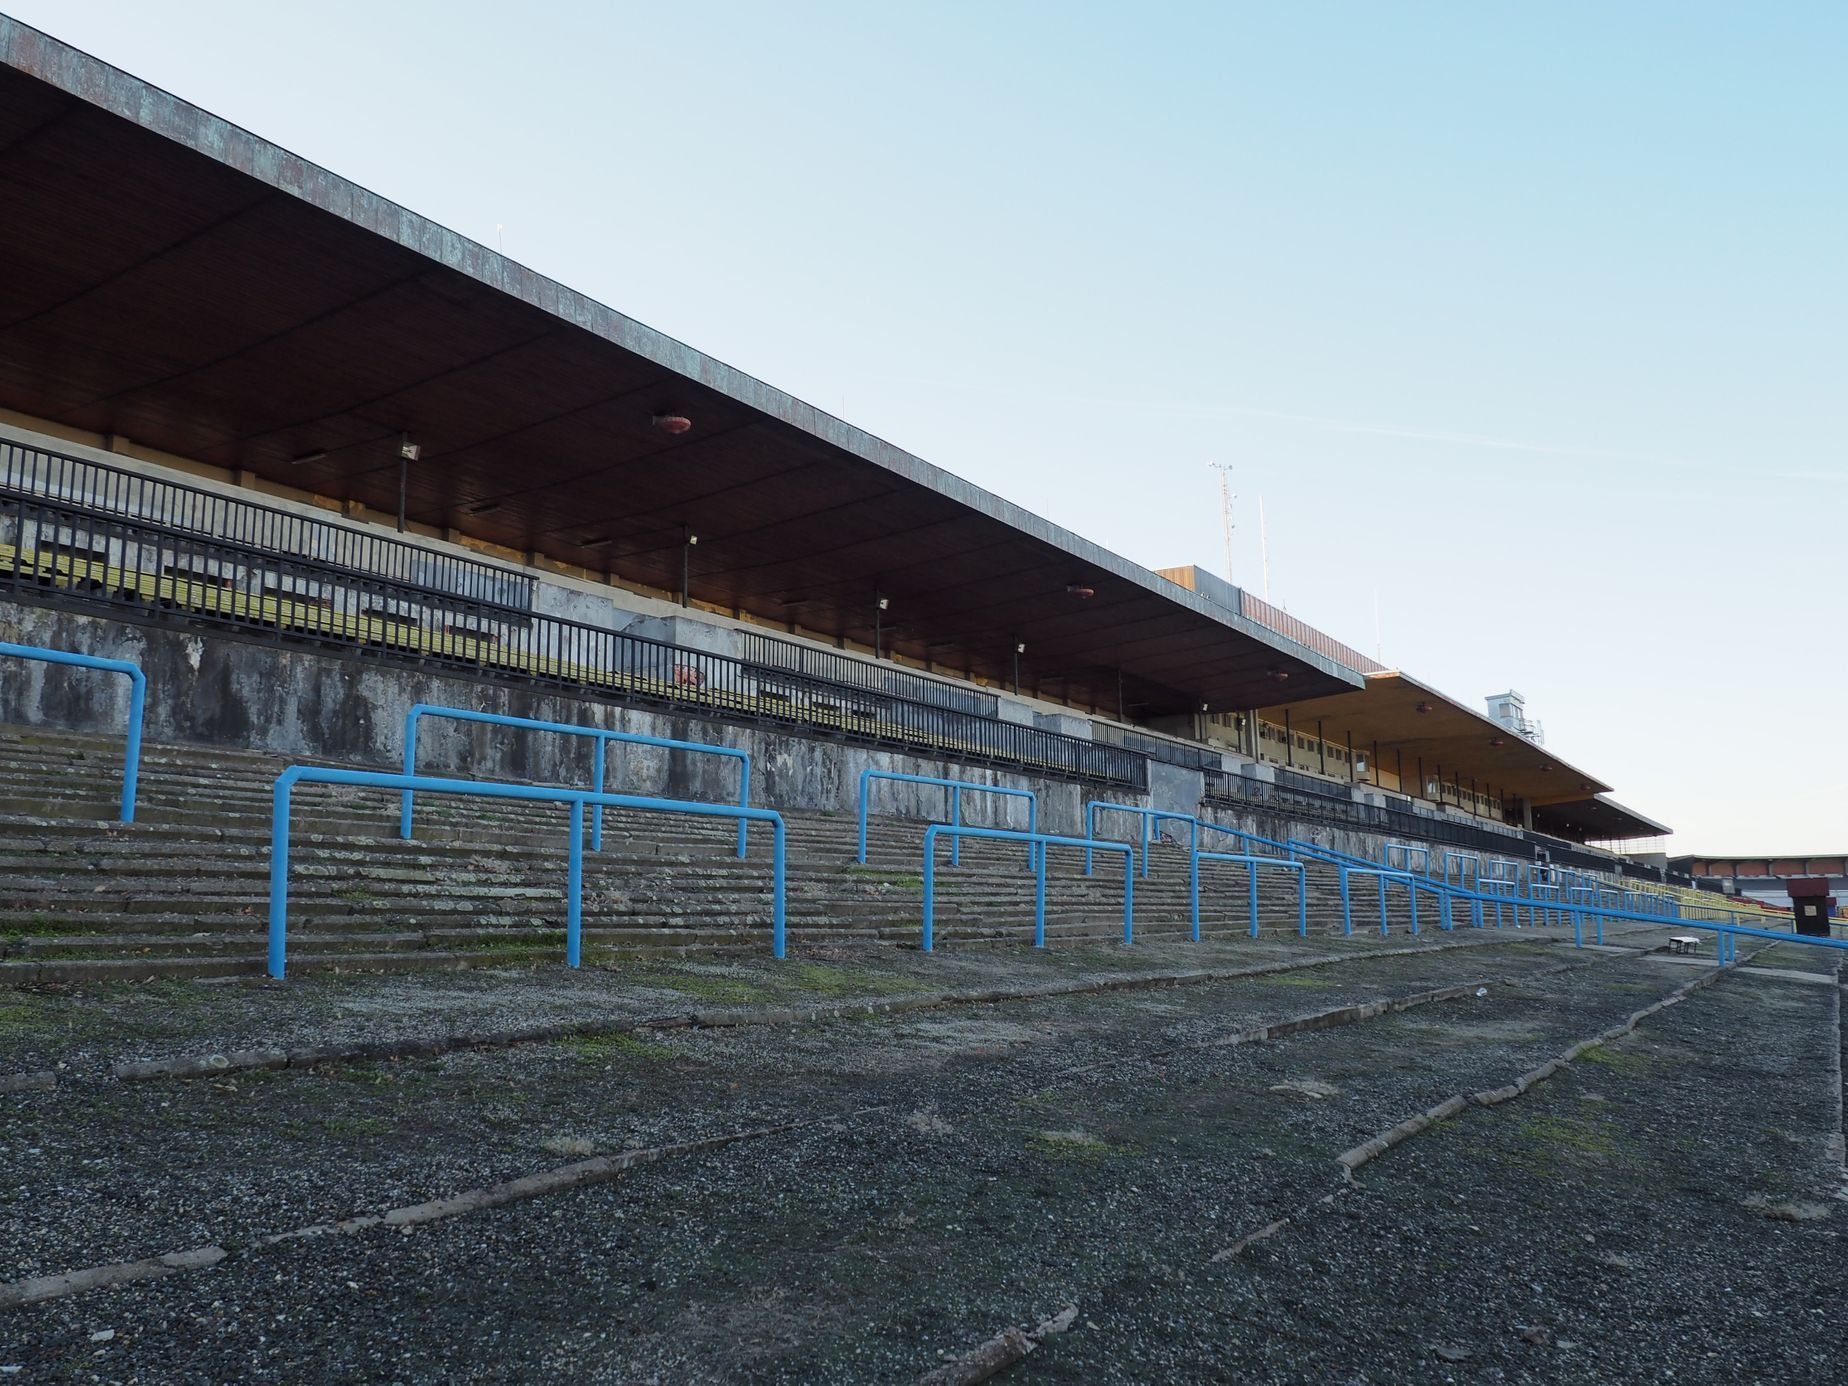 Stadion Strahov